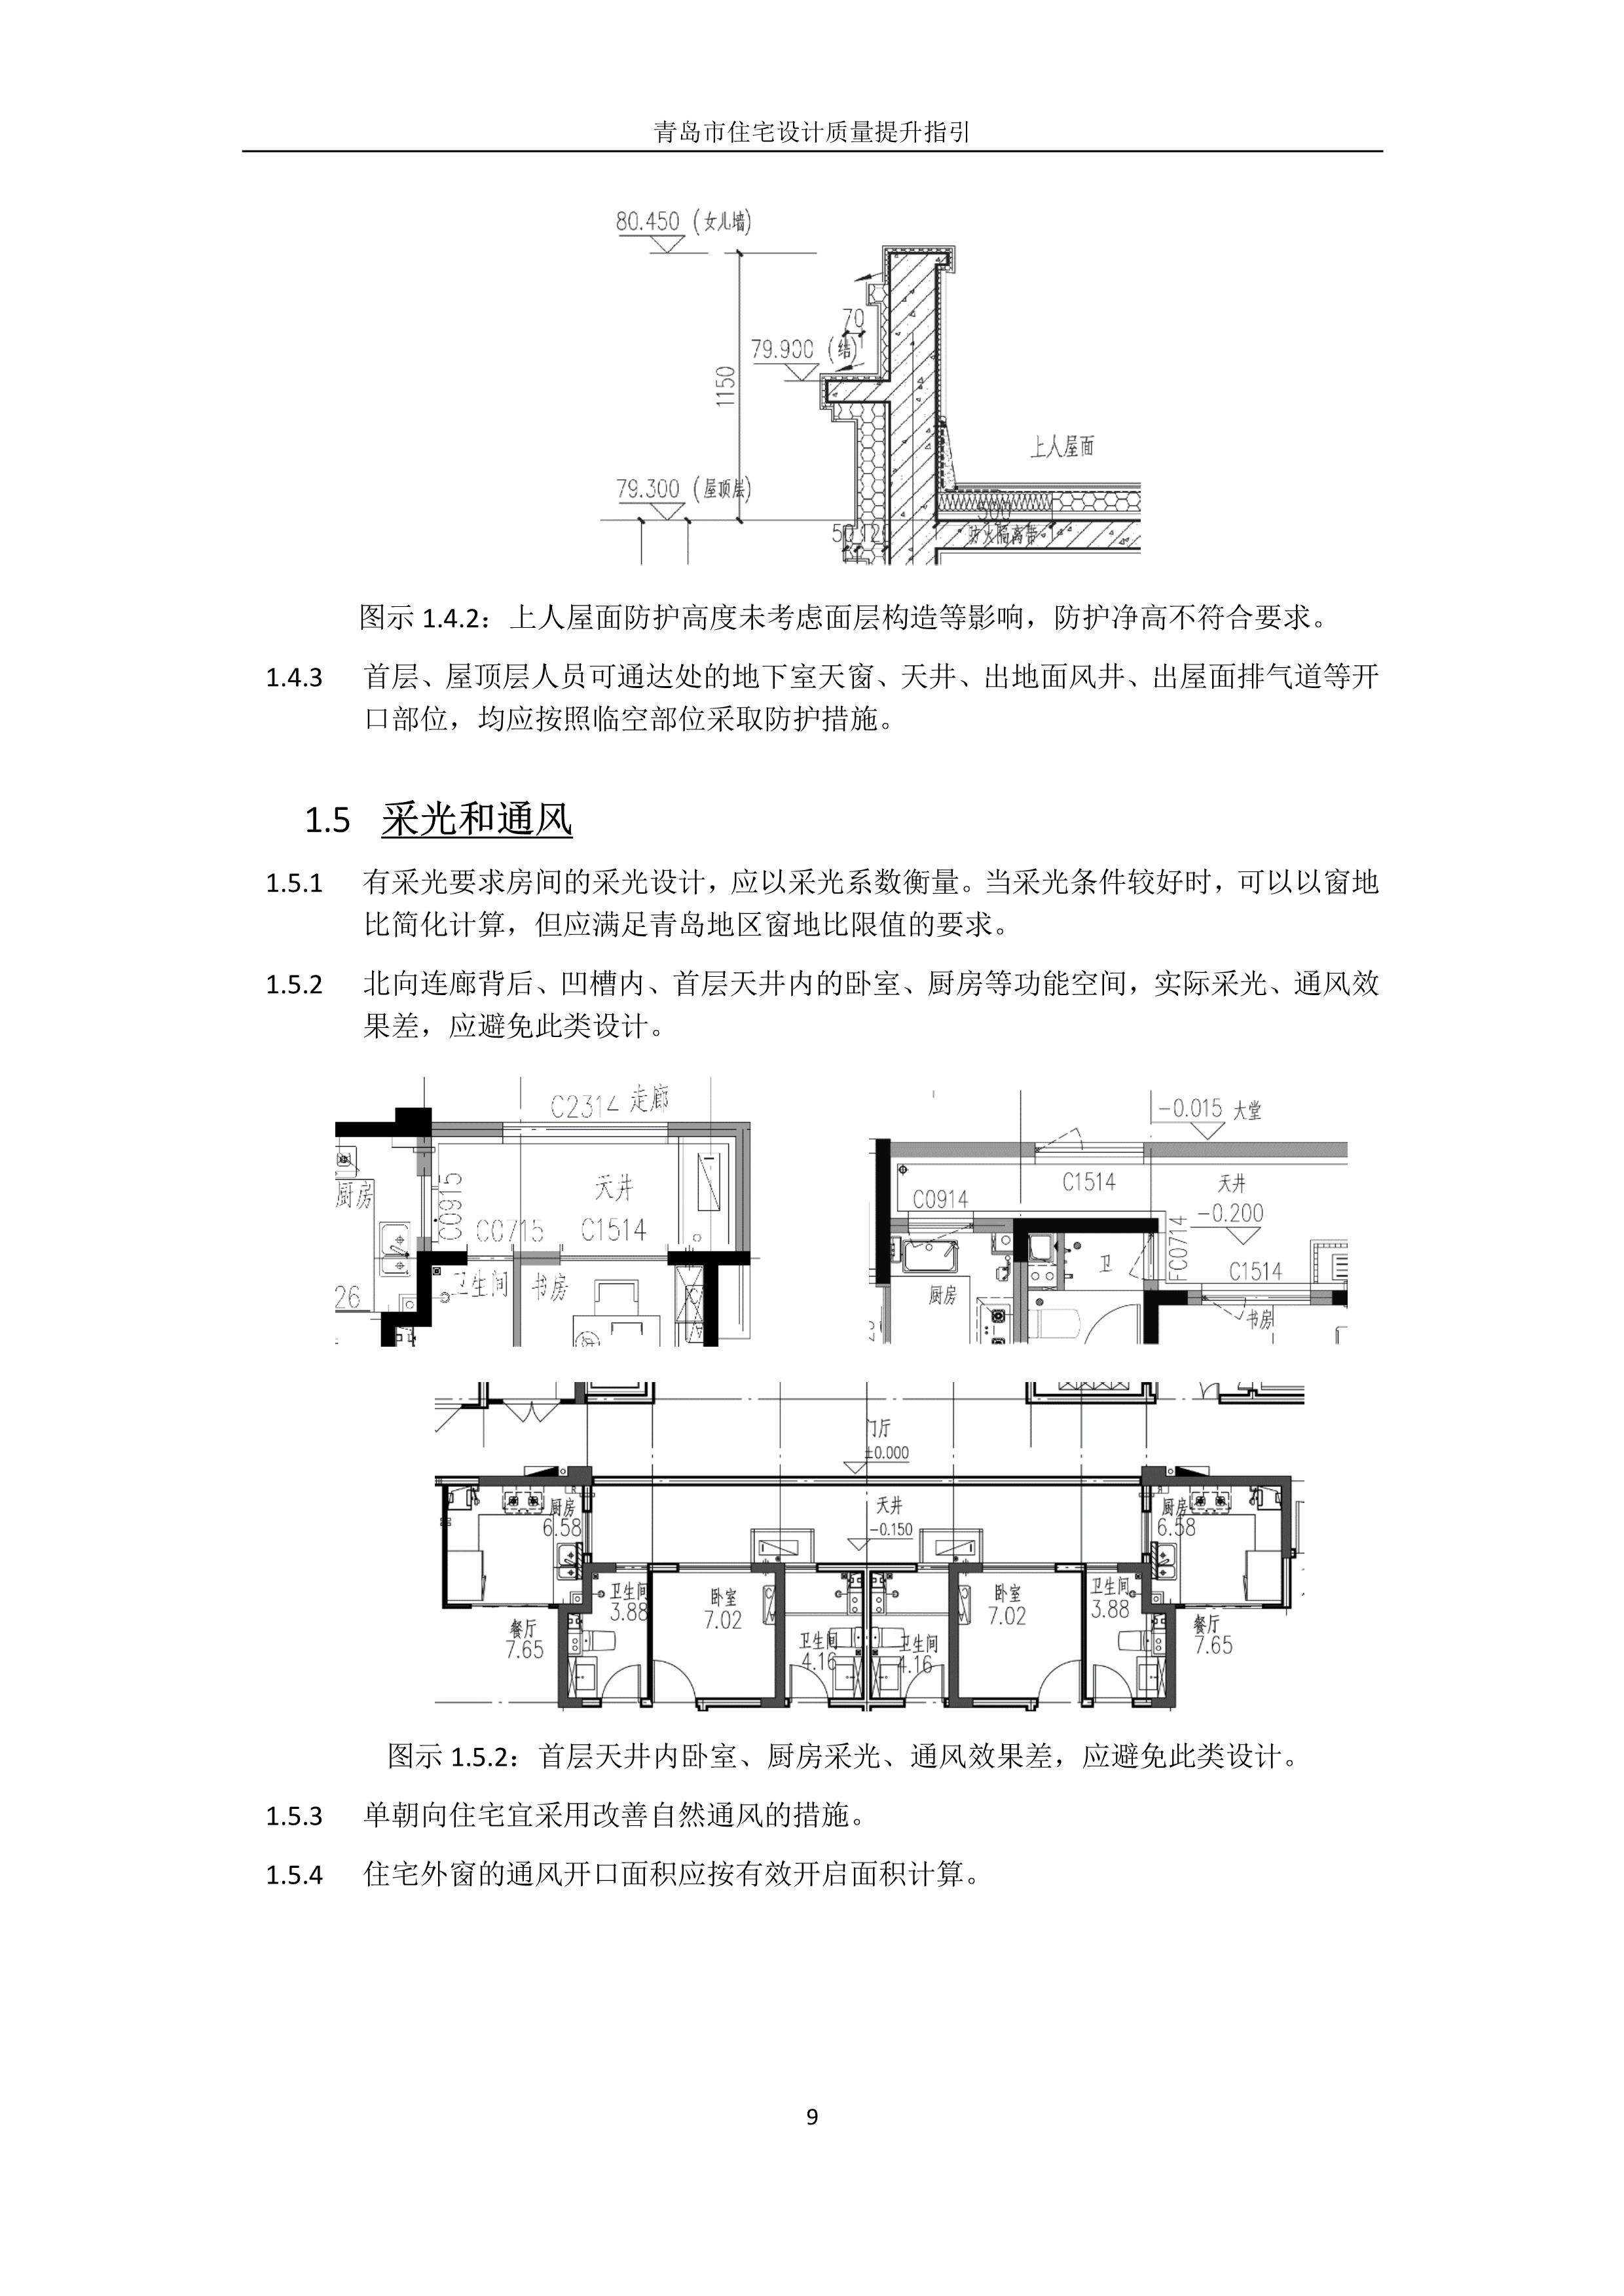 关于发布《青岛市住宅设计质量提升指引》 的通知